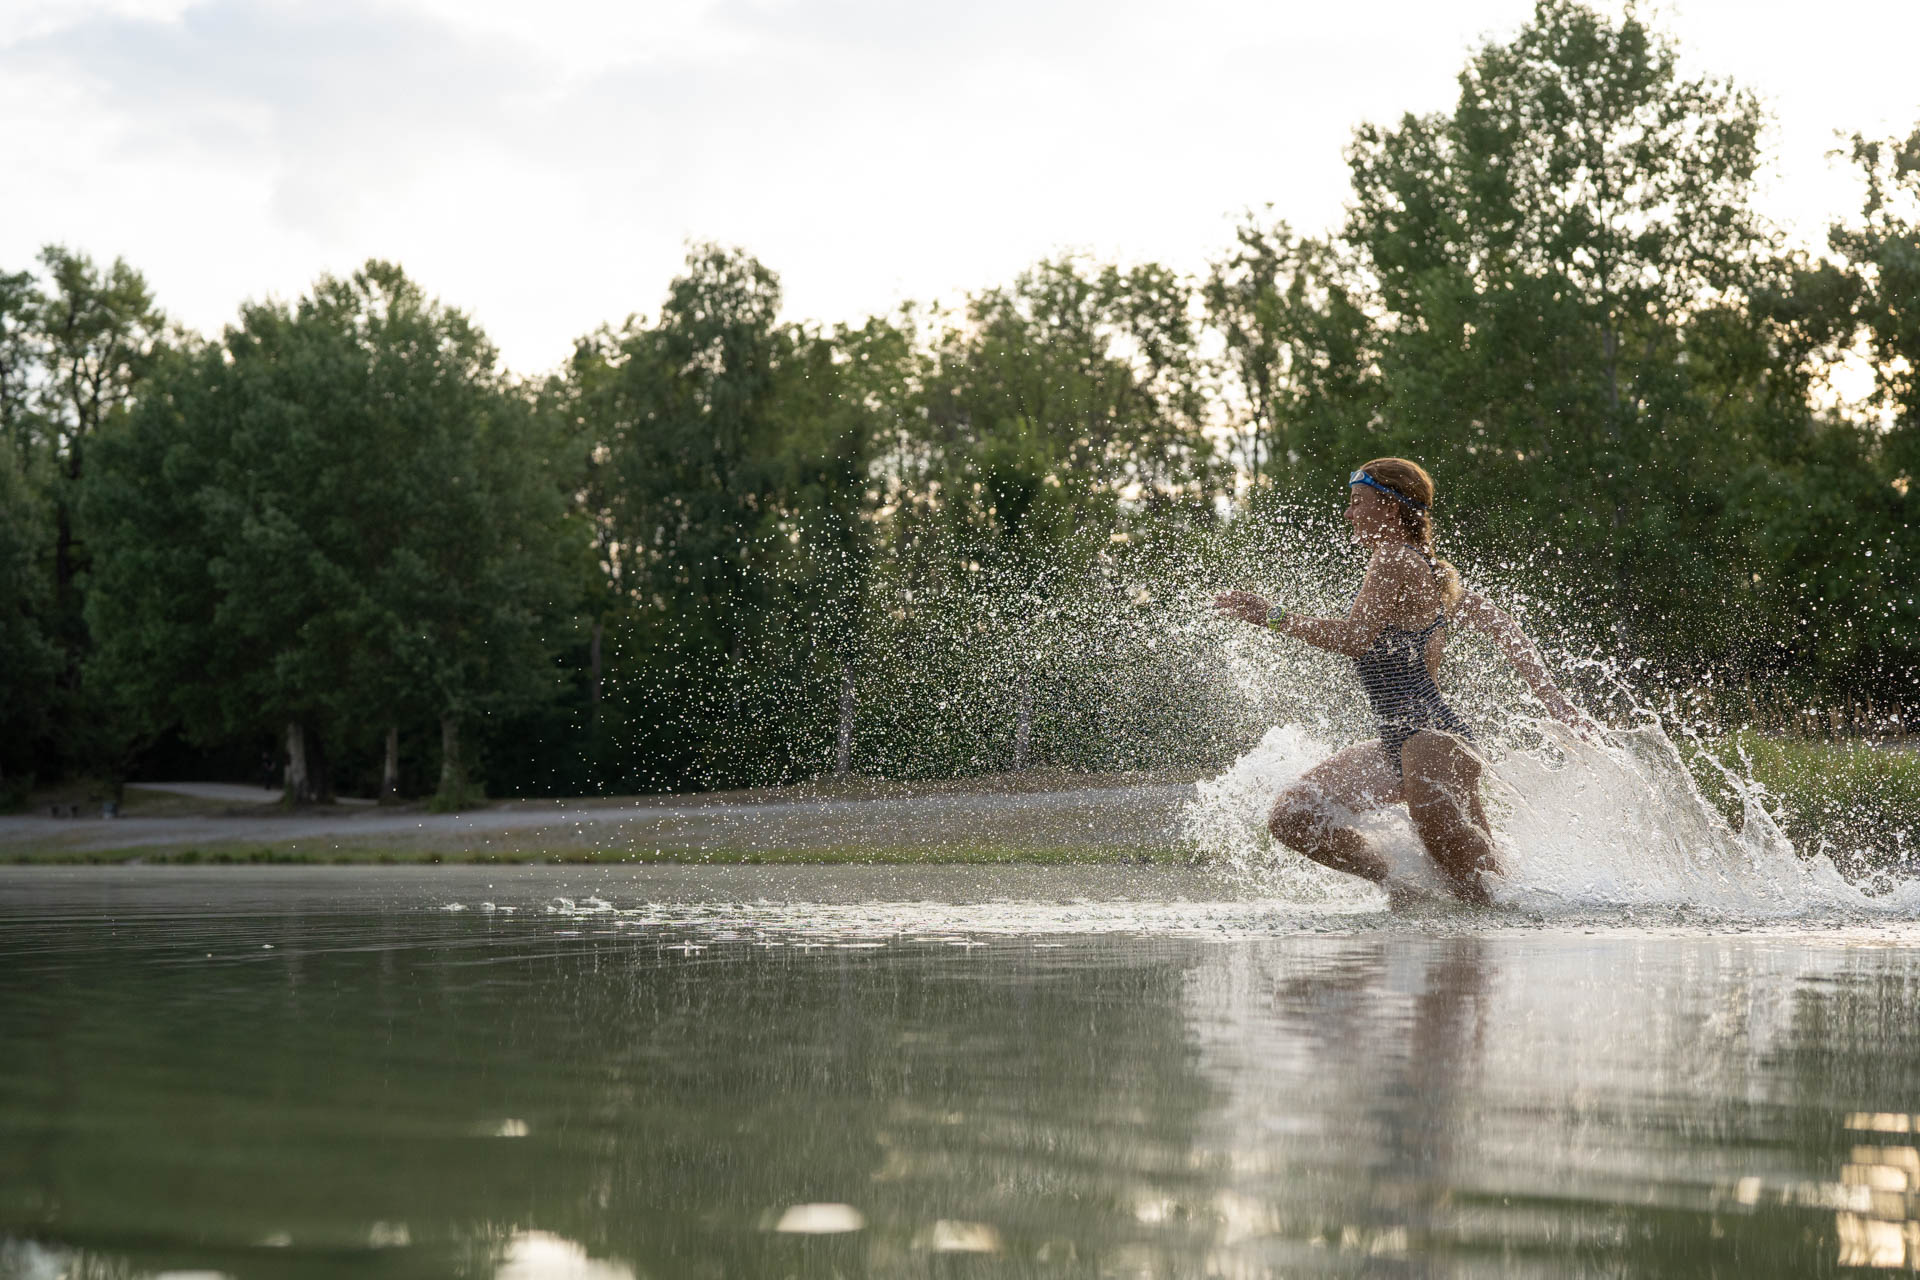 Eine Triathletin beim Schwimmen im Kuhsee in Augsburg - sie inspiriert uns, uns selbst zu überwinden.